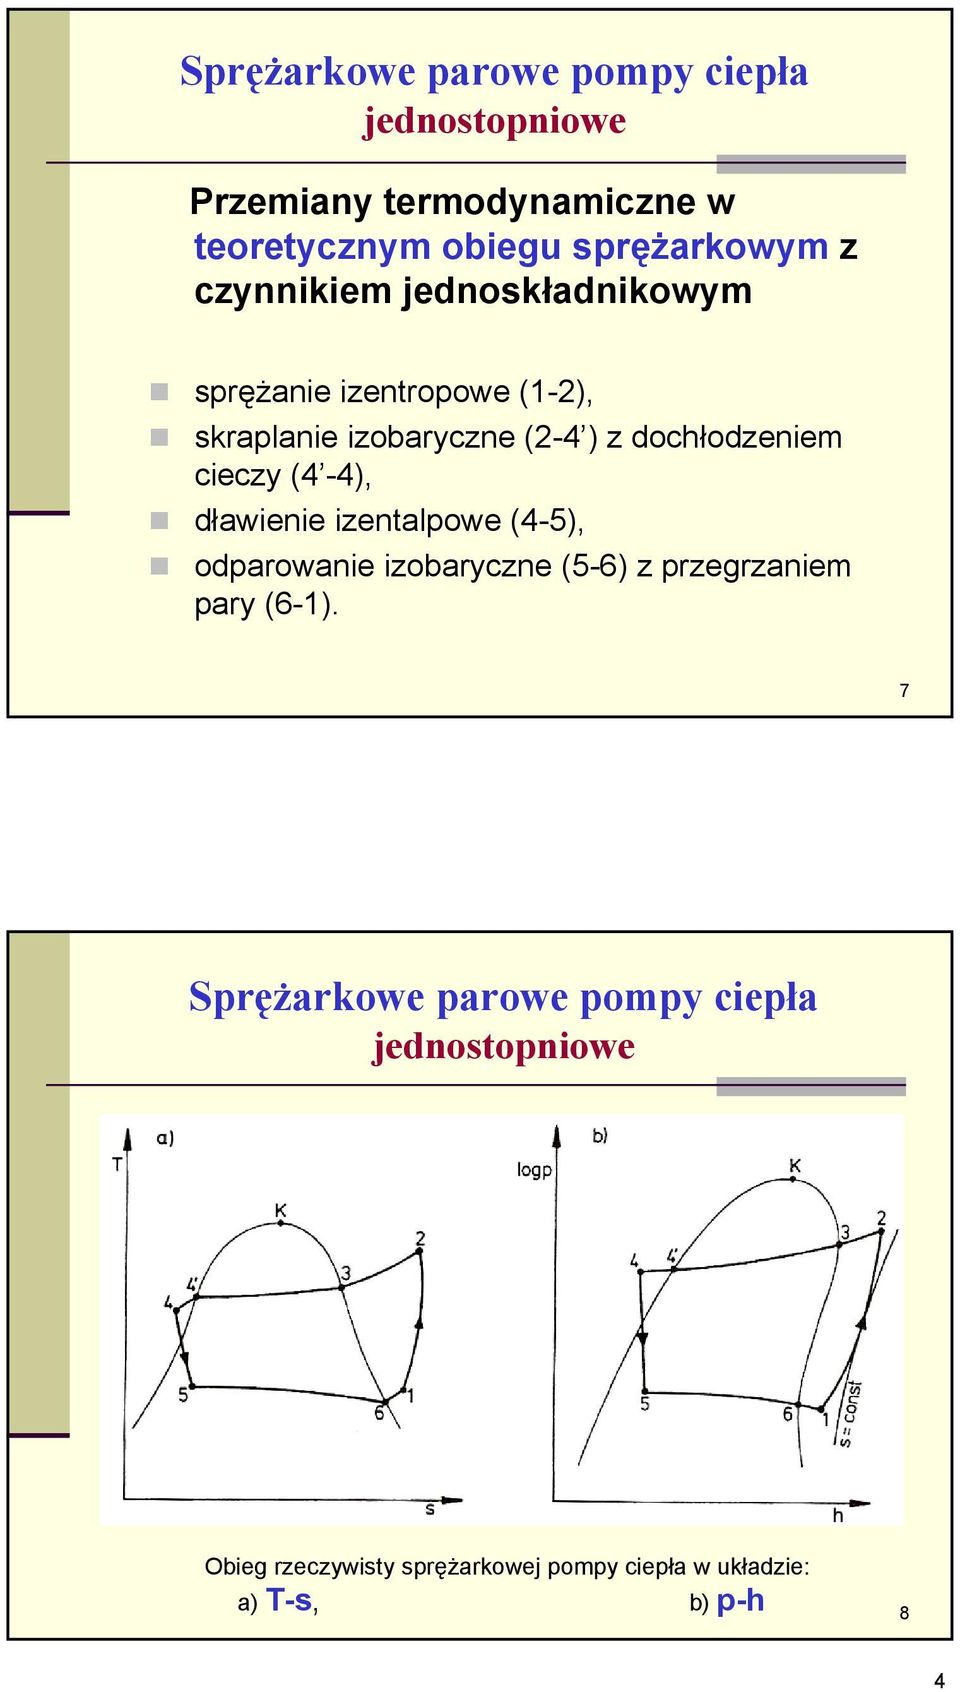 cieczy (4-4), dławienie izentalpowe (4-5), odparowanie izobaryczne (5-6) z przegrzaniem pary (6-1).